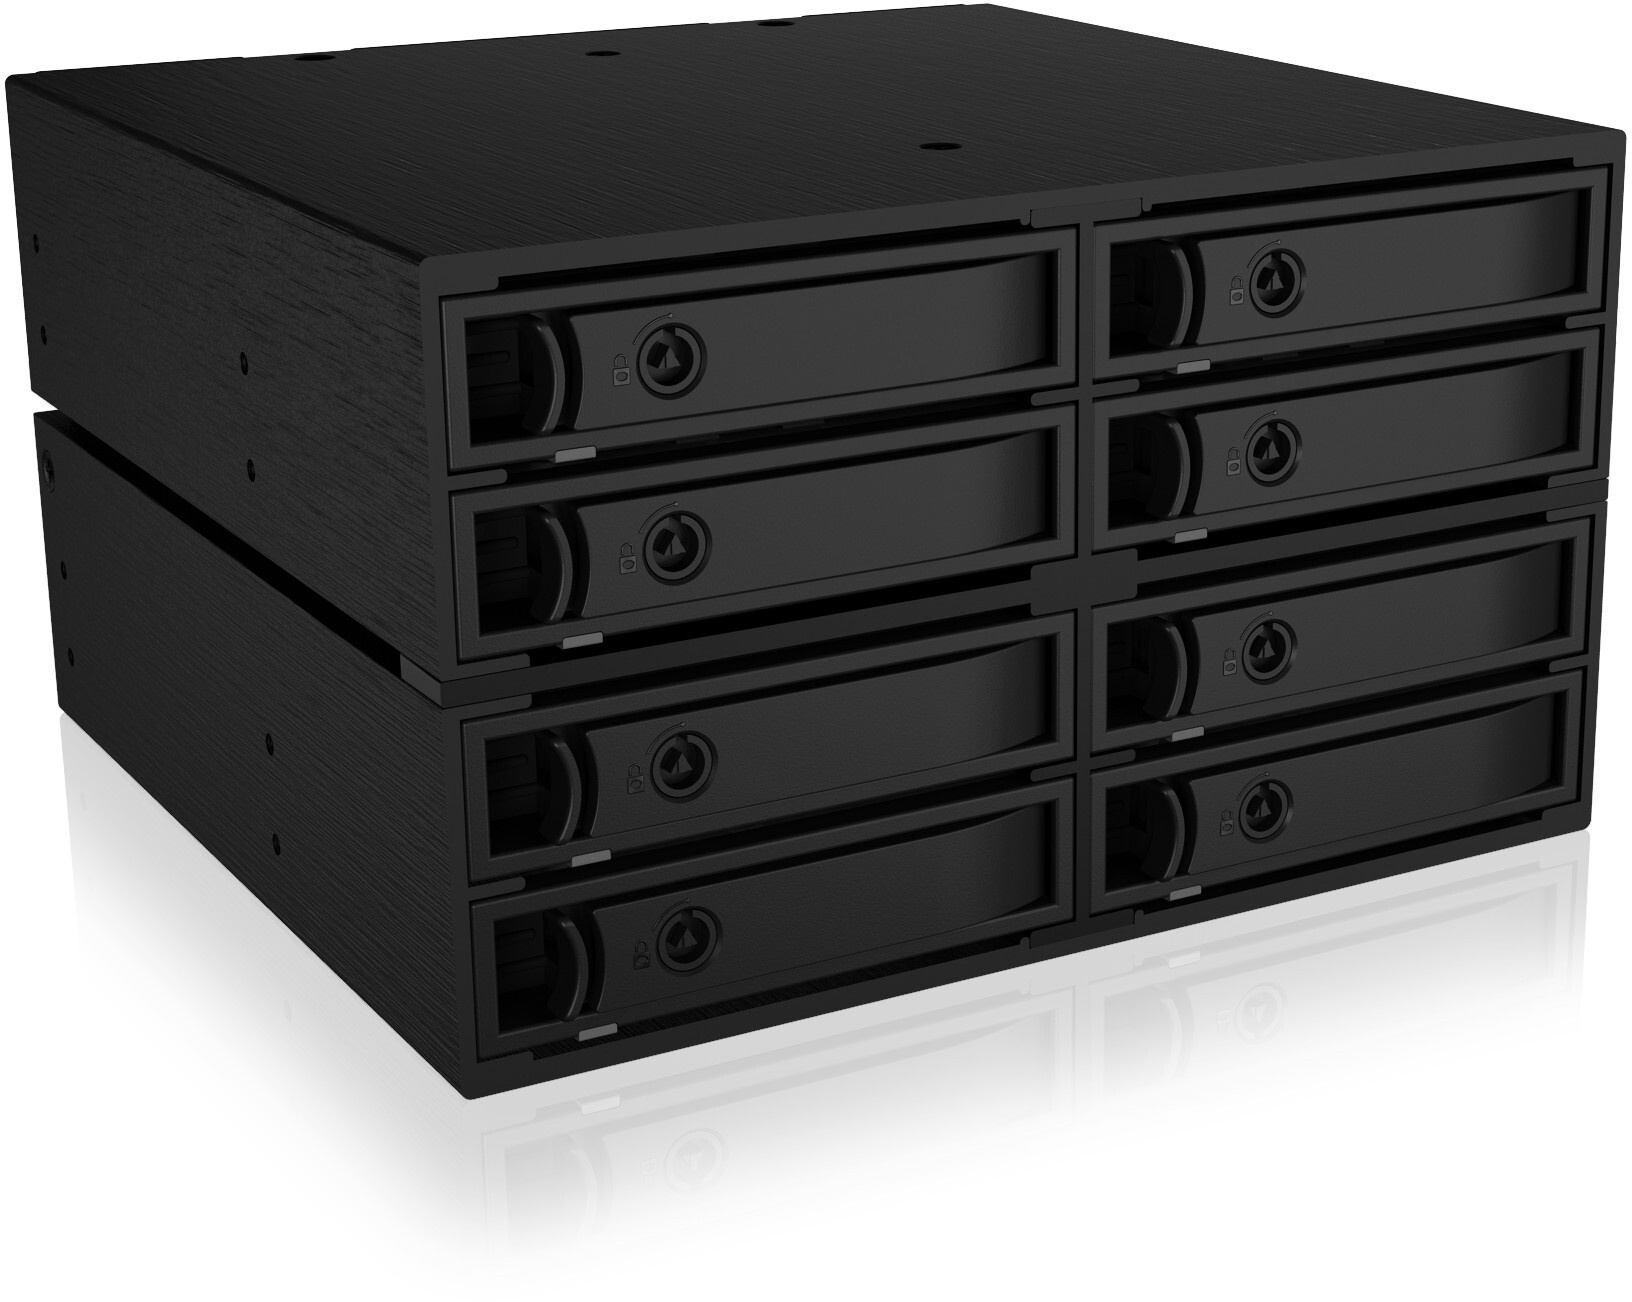 ICY BOX Backplane für 8x 2,5" SATA/SAS HDD/SSD in 2x 5,25" in 2x 5,25" Schacht - Zwei Lüfter 50x50 mm